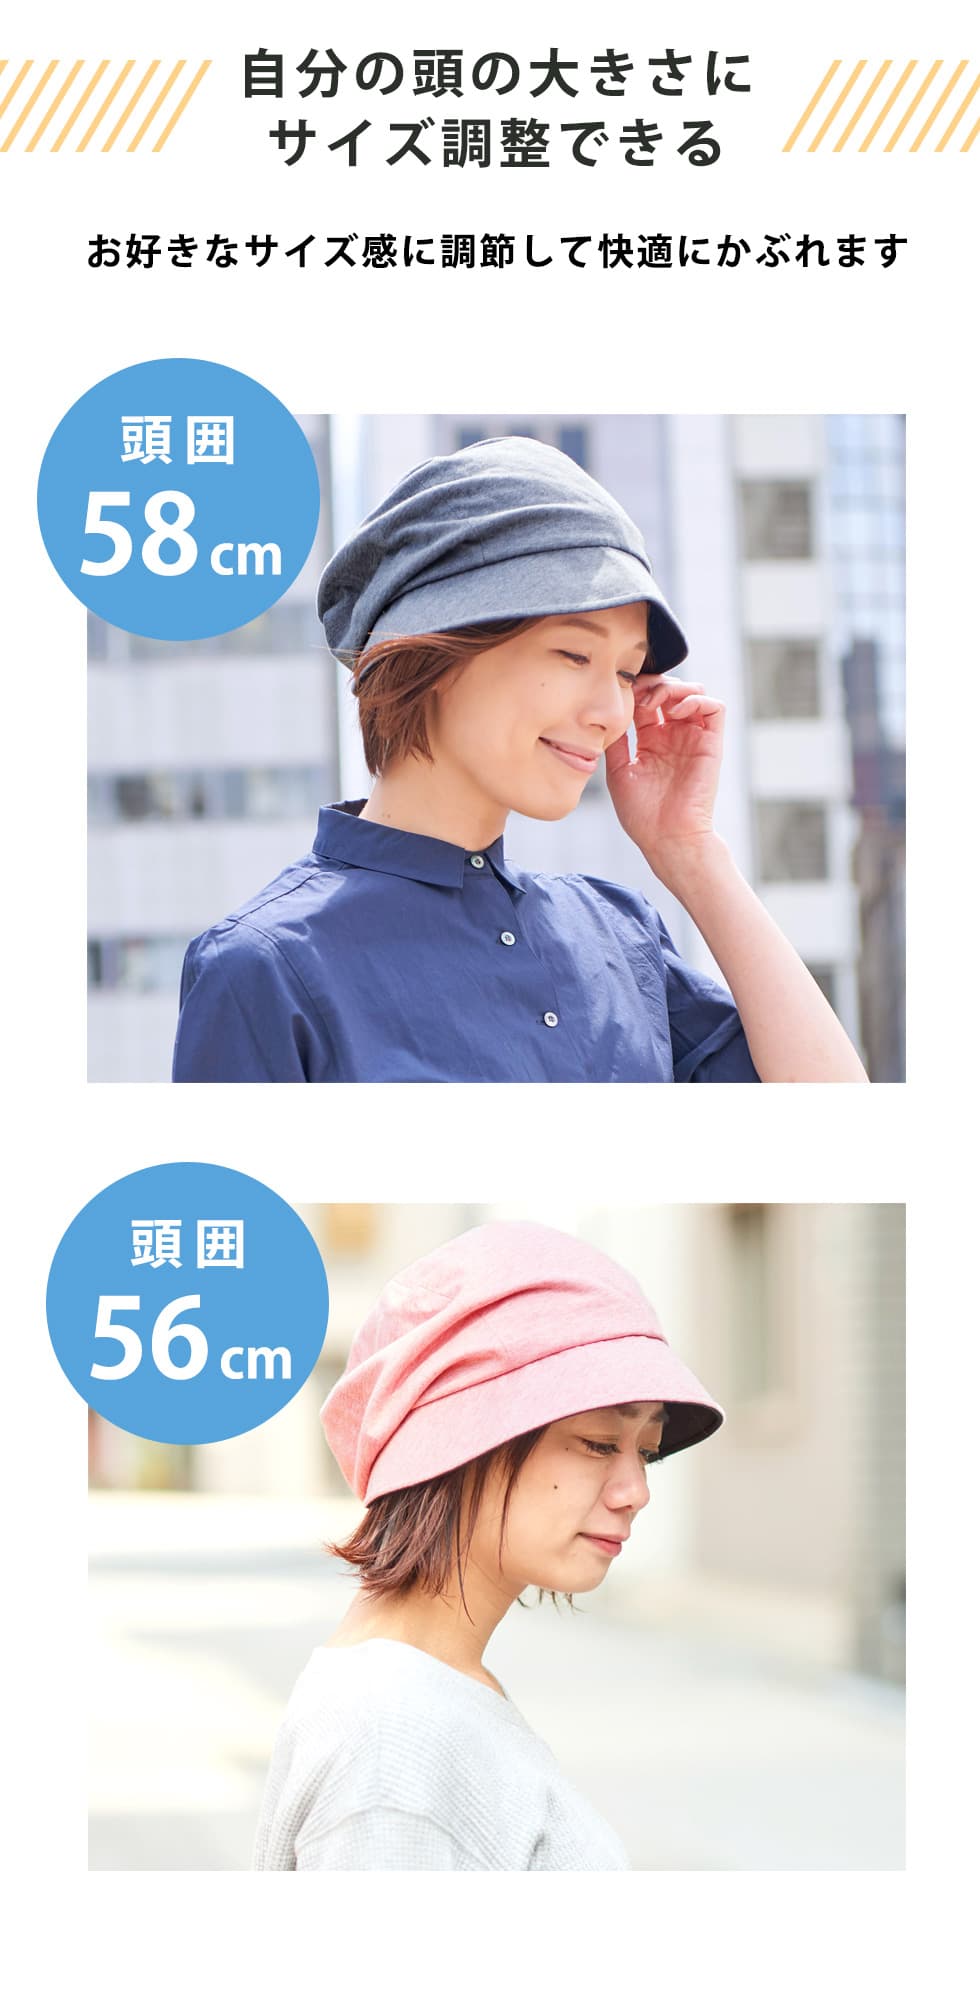 自分の頭の大きさにサイズ調整できる　お好きなサイズ感に調節して、快適にかぶれます。頭囲58cmの女性が帽子をかぶる画像・頭囲56cmの女性が帽子をかぶる画像